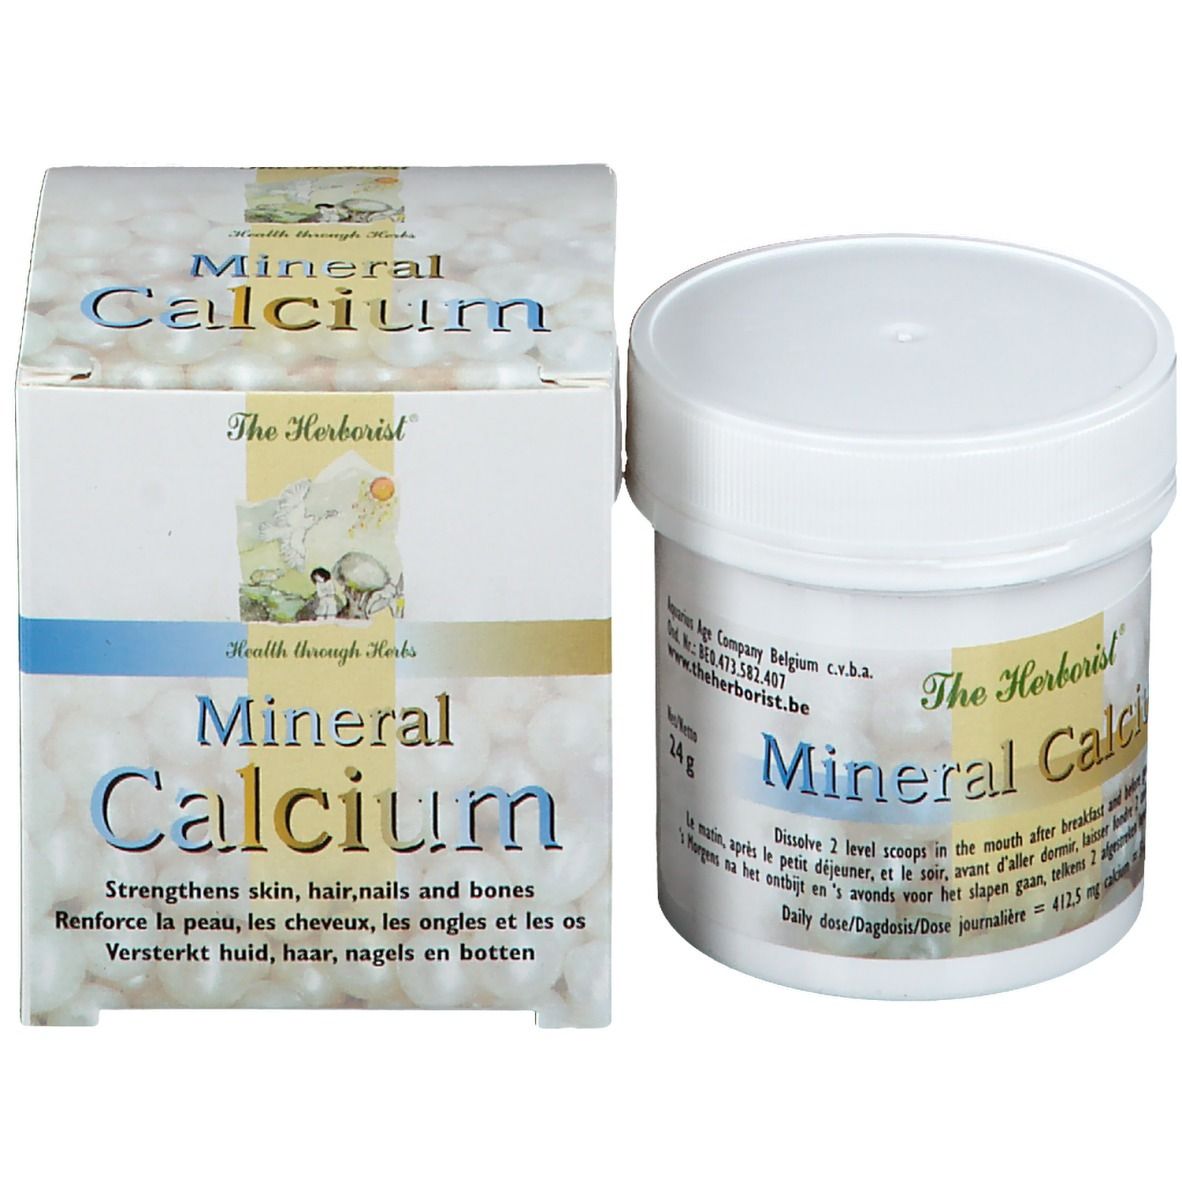 Herborist Mineral Calcium